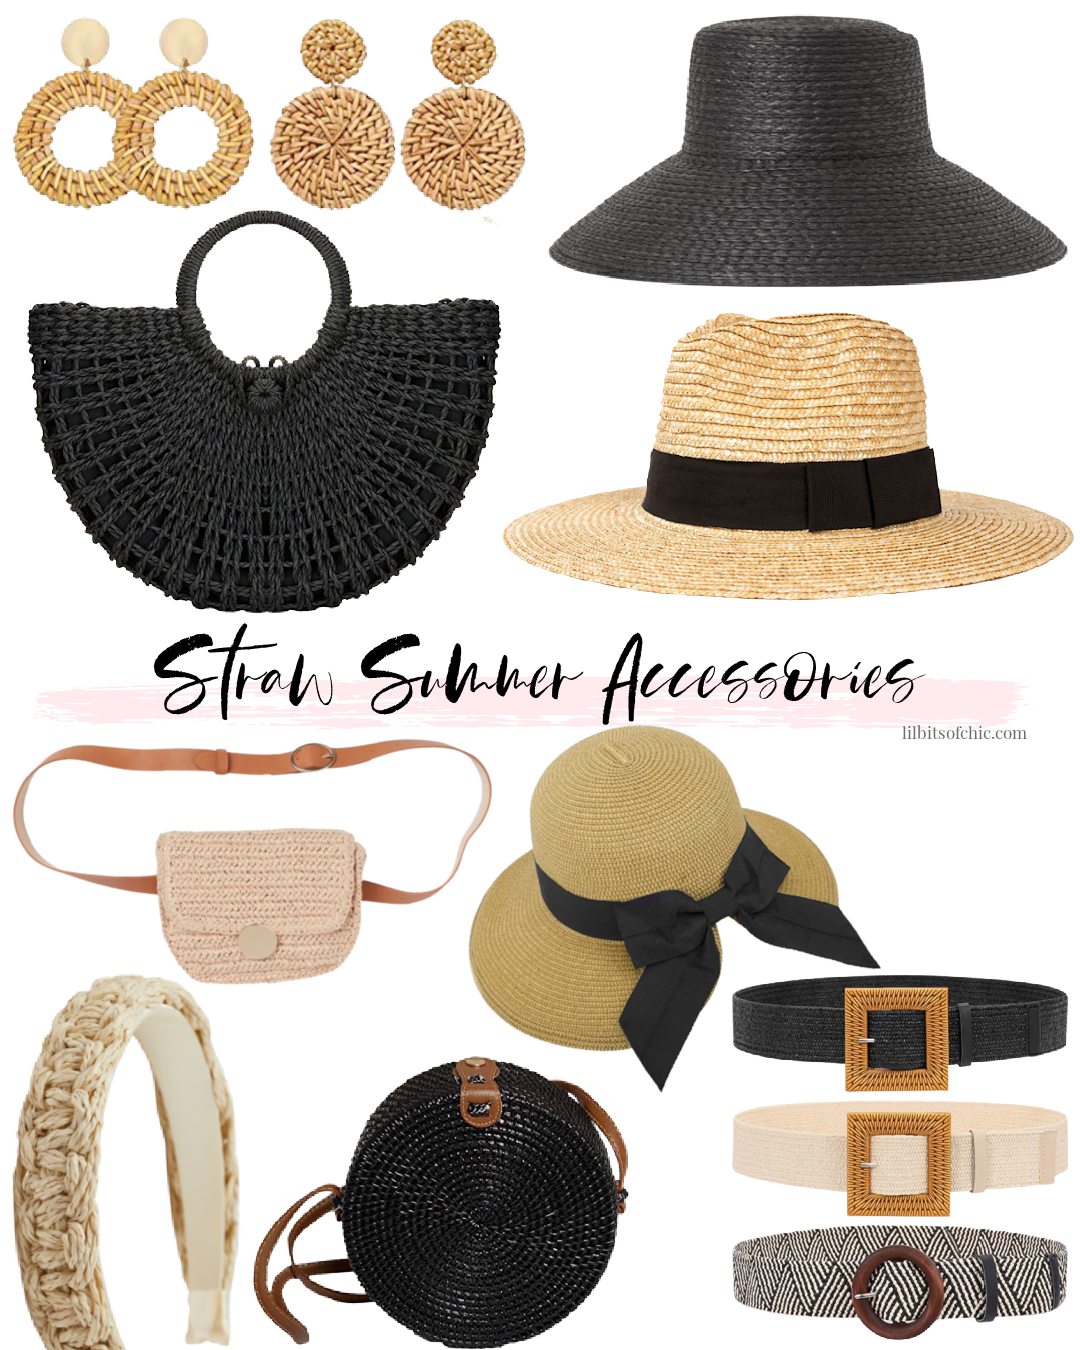 Straw summer accessories under $60, summer accessories for 2021